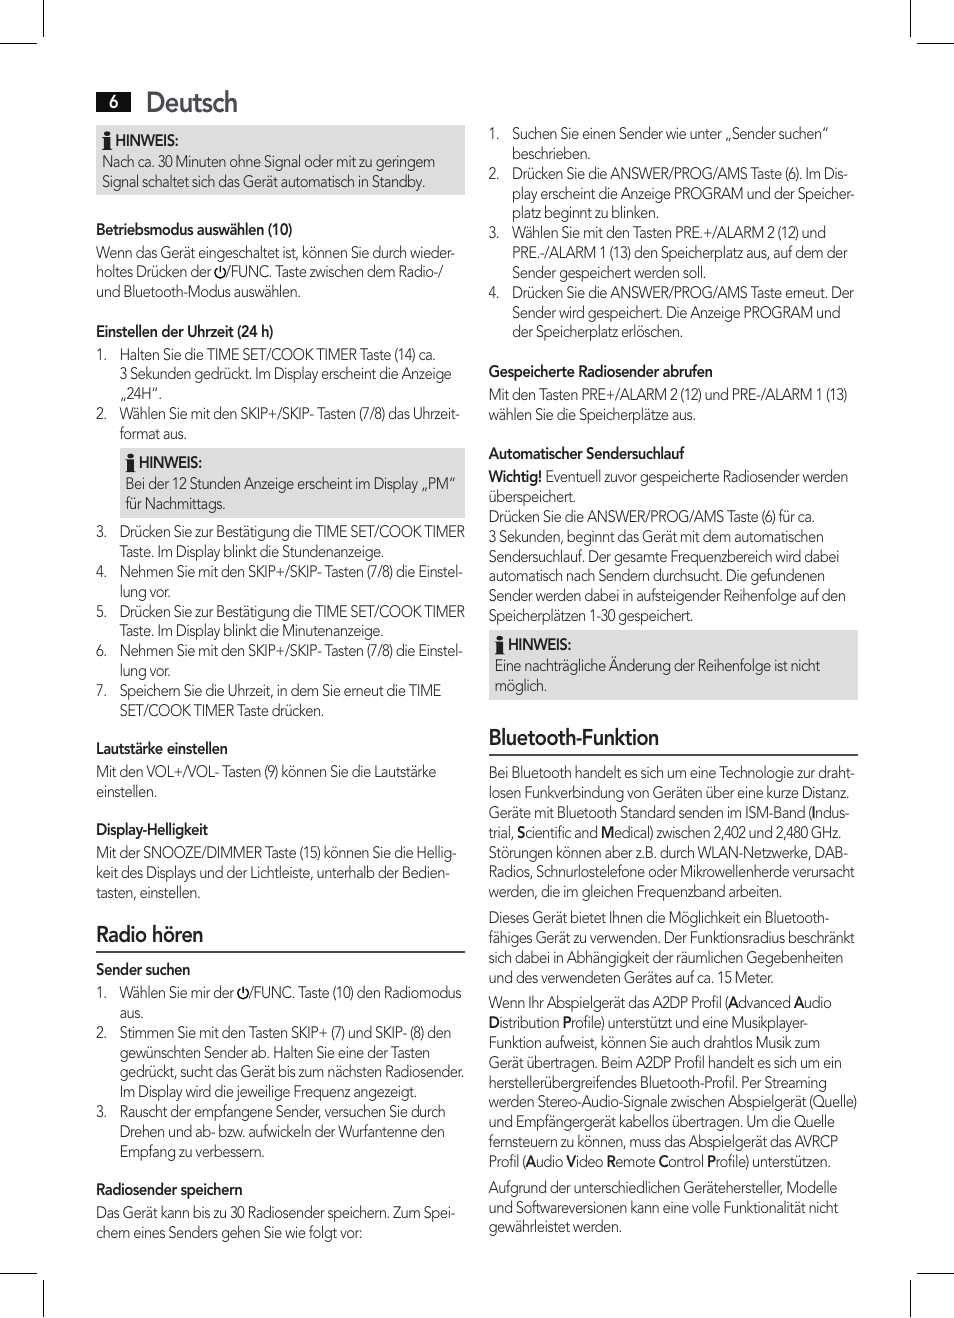 Deutsch, Radio hören, Bluetooth-funktion | AEG KRC 4361 BT User Manual |  Page 6 / 62 | Original mode